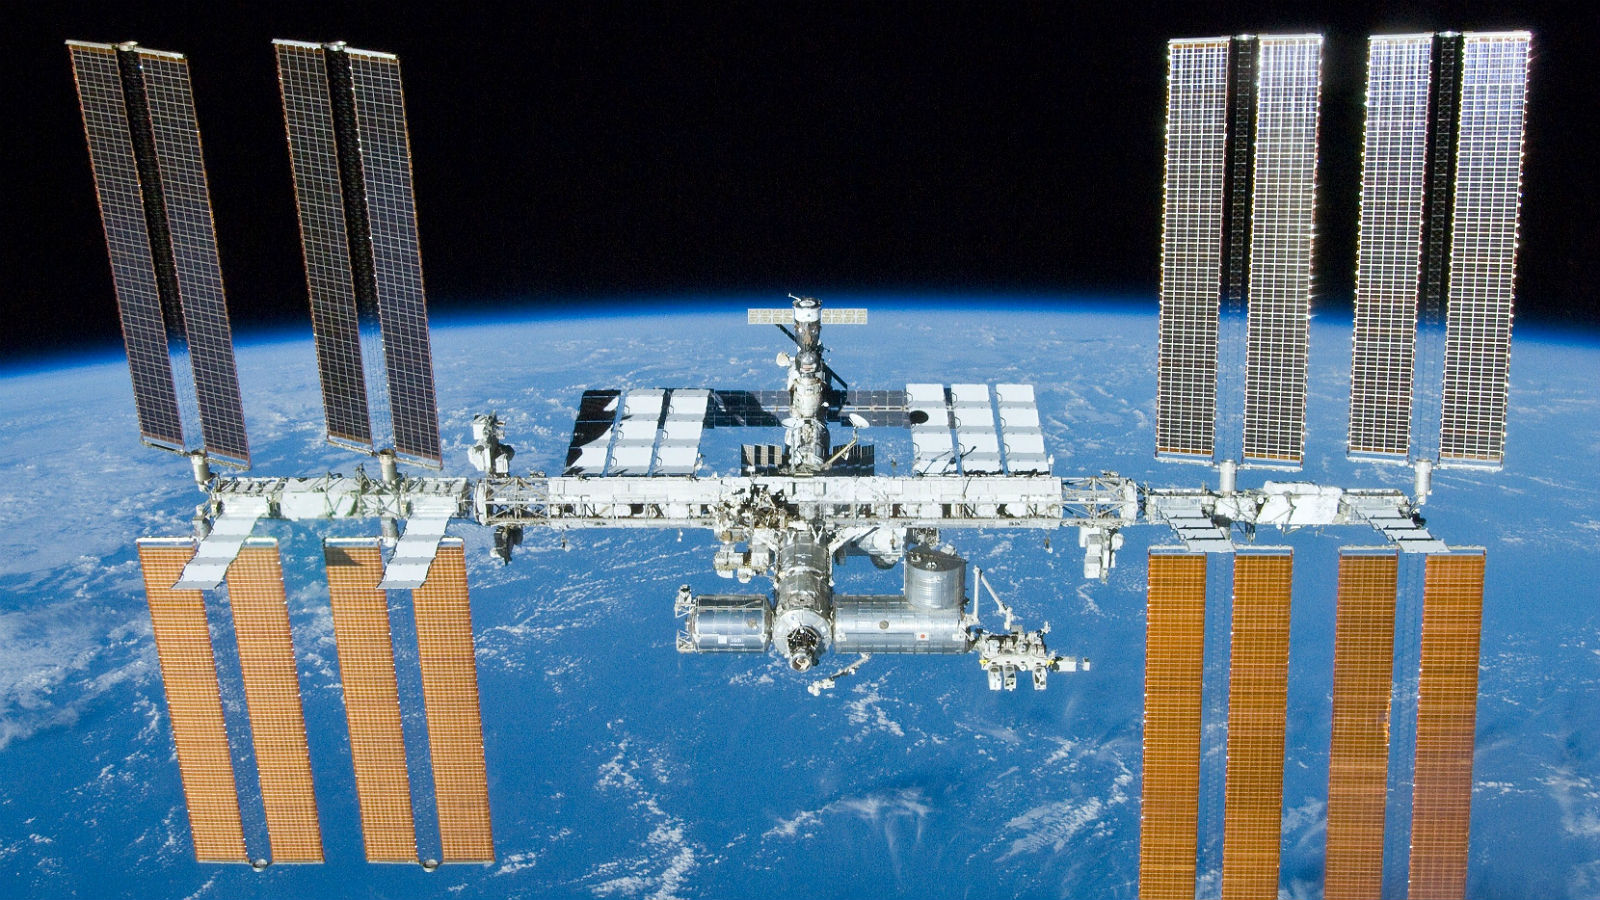 Die ISS: Man erkennt die riesigen Solarpanels und die einzelnen röhrenförmigen Module. Bild: NASA